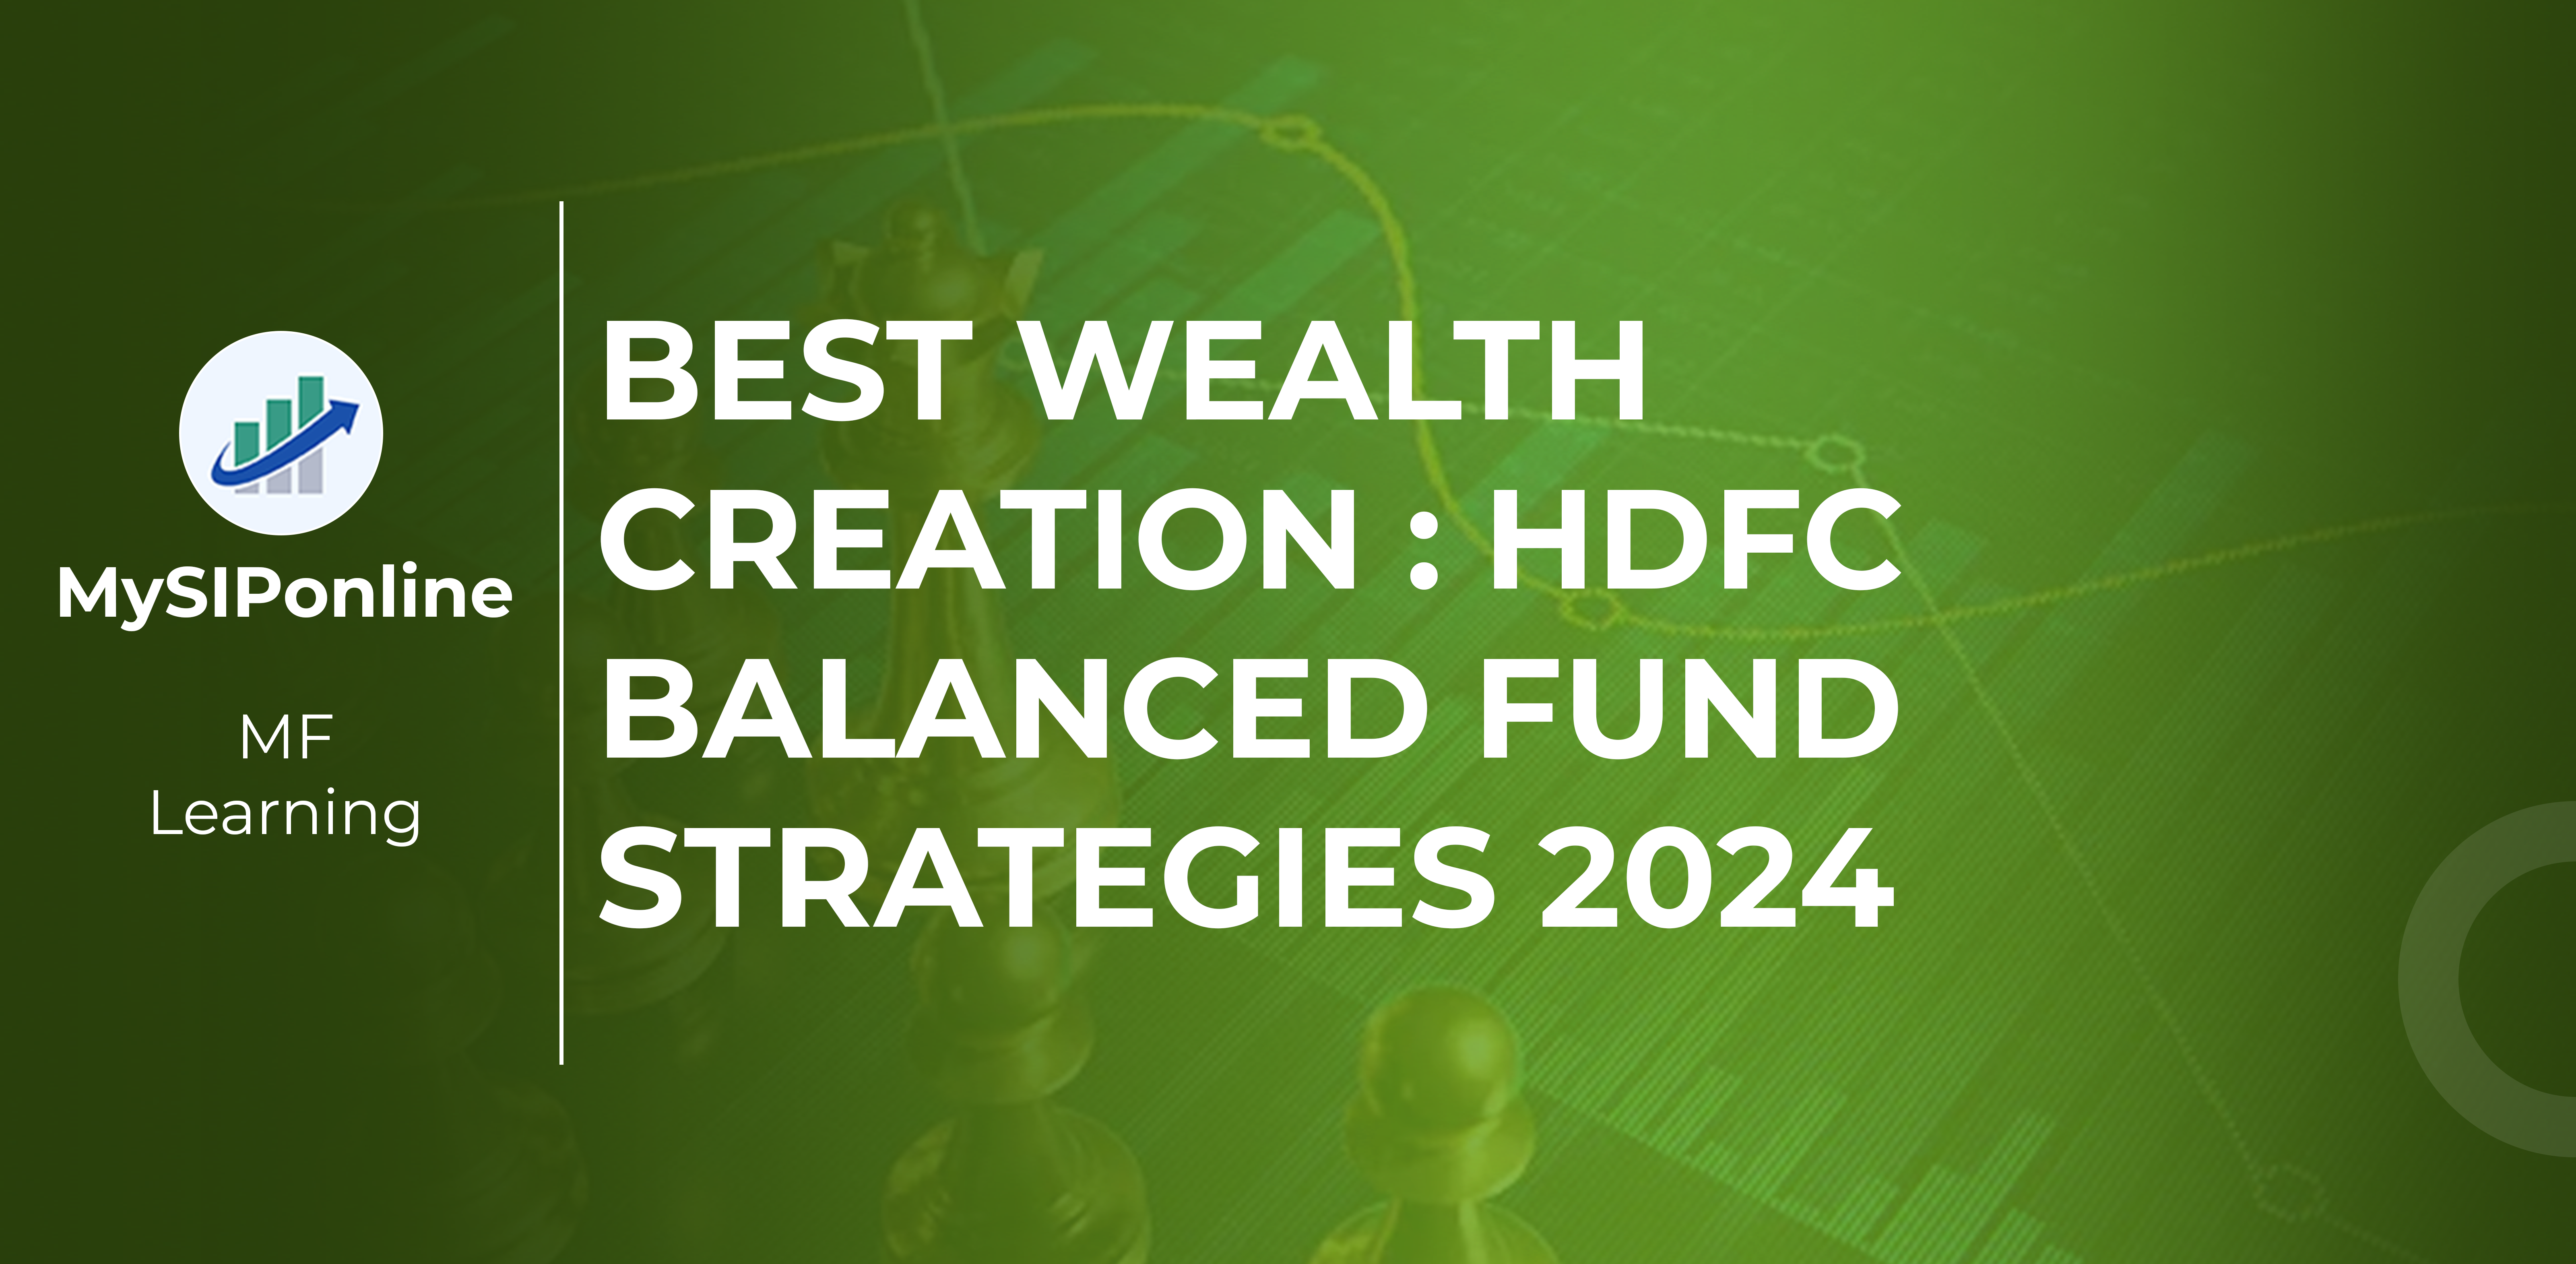 Best Wealth Creation HDFC Balanced Advantage Fund Strategies 2024